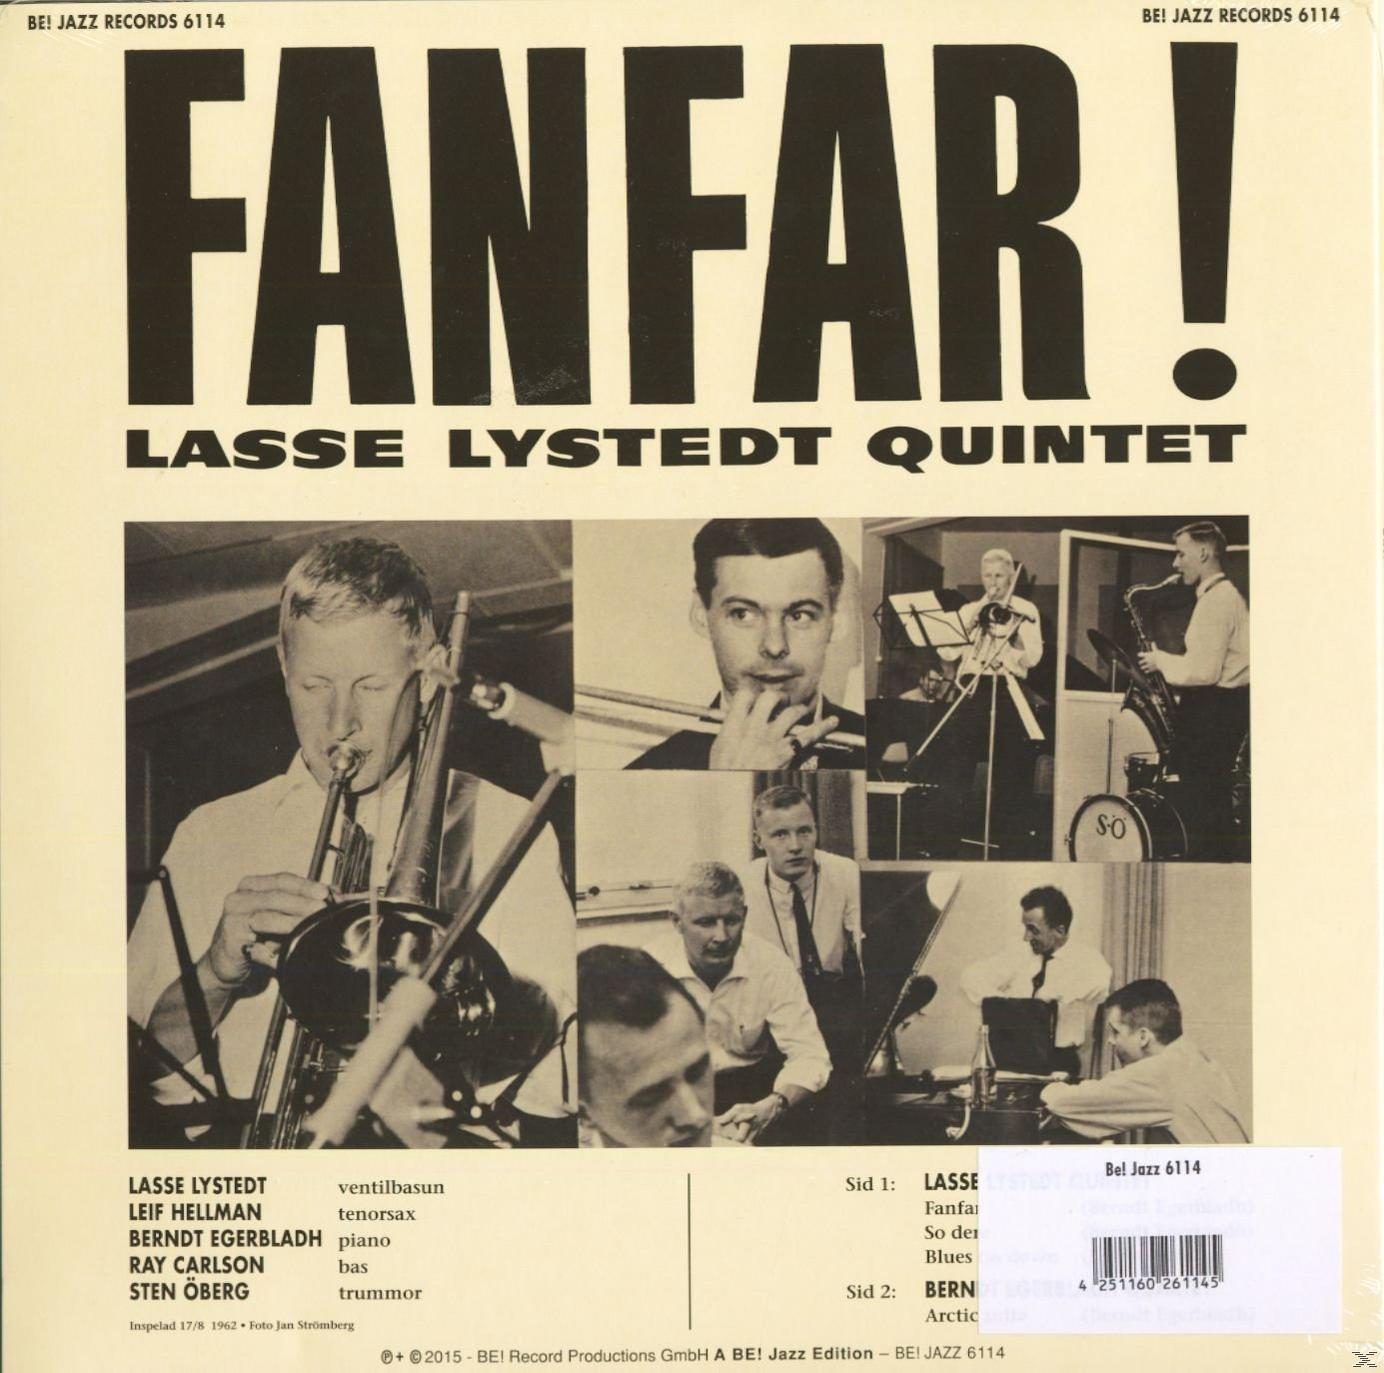 Lasse Lystedt Quintet - Fanfar! (Vinyl) - (10inch)